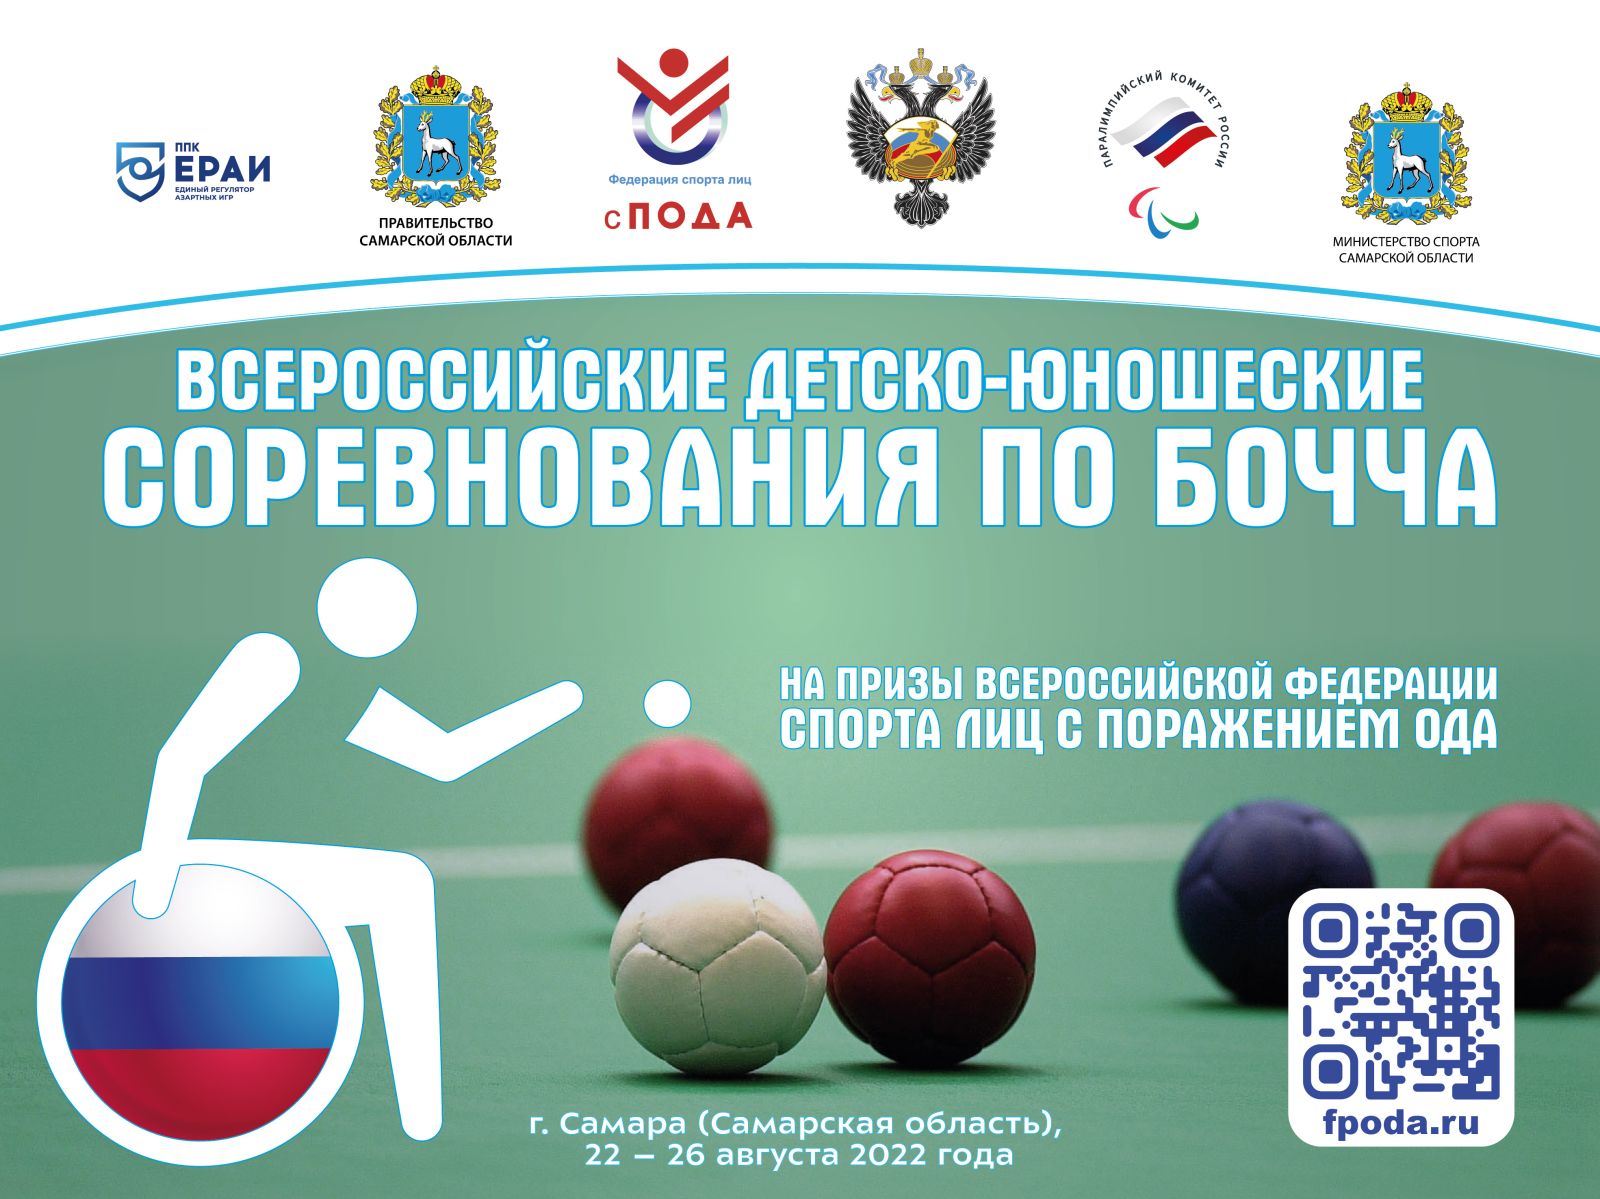 Около 40 спортсменов примут участие во Всероссийских детско-юношеских соревнованиях по бочча среди лиц с ПОДА 